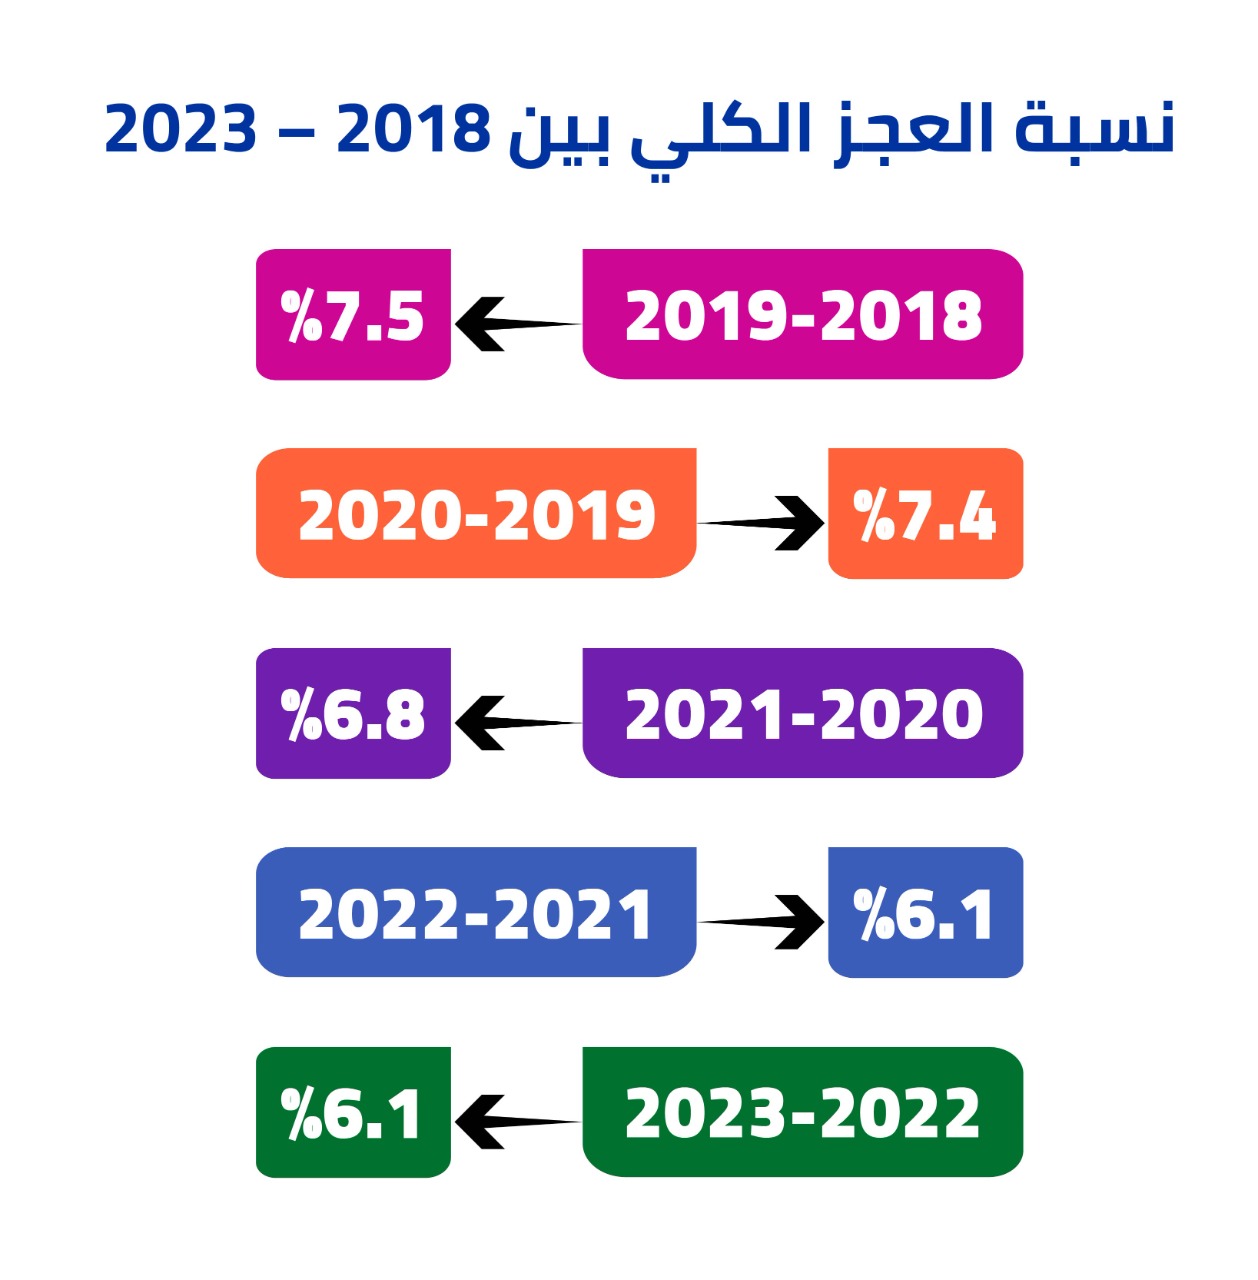 نسبة العجز الكلي بين 2018 – 2023